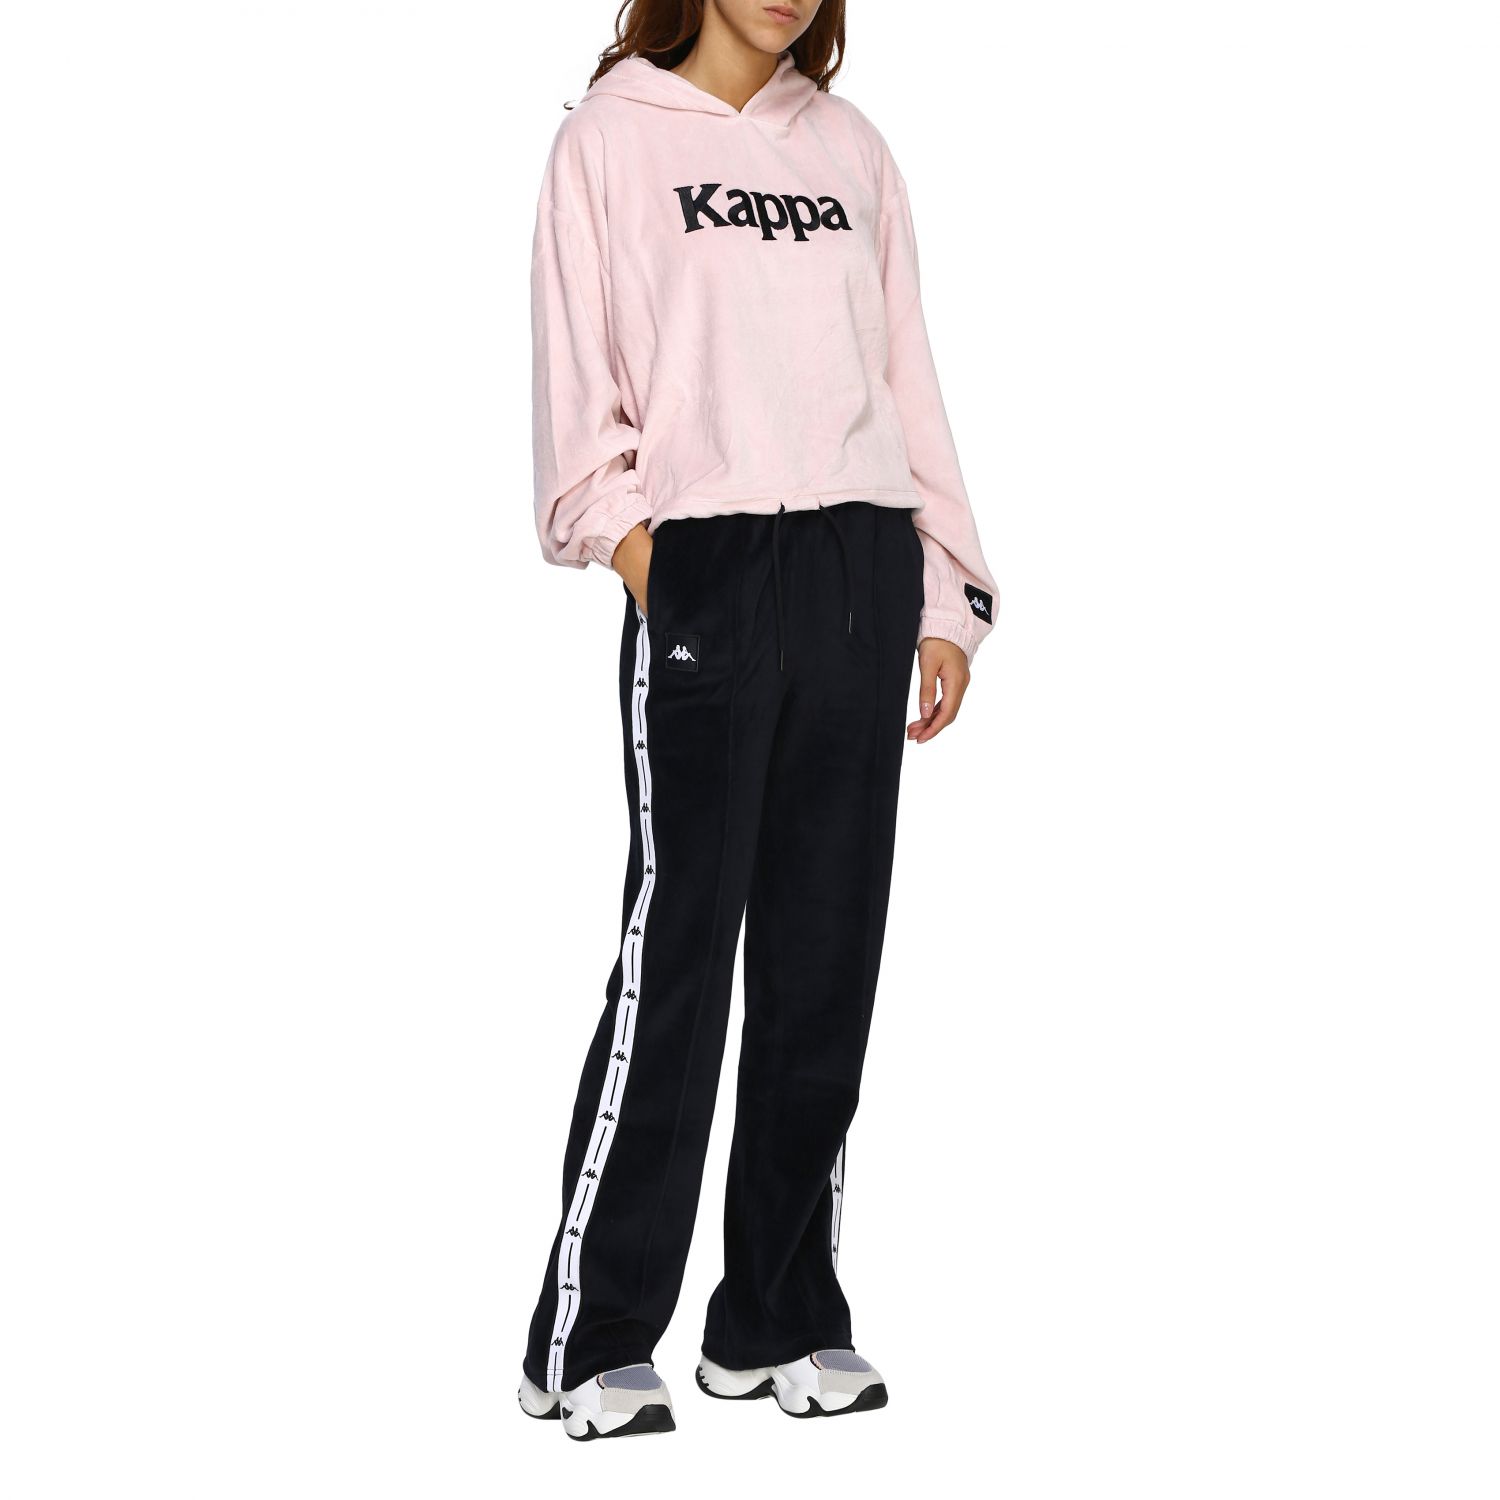 Bør Lav aftensmad tolv Kappa Outlet: Sweater women | Sweatshirt Kappa Women Pink | Sweatshirt Kappa  304NRD0 GIGLIO.COM